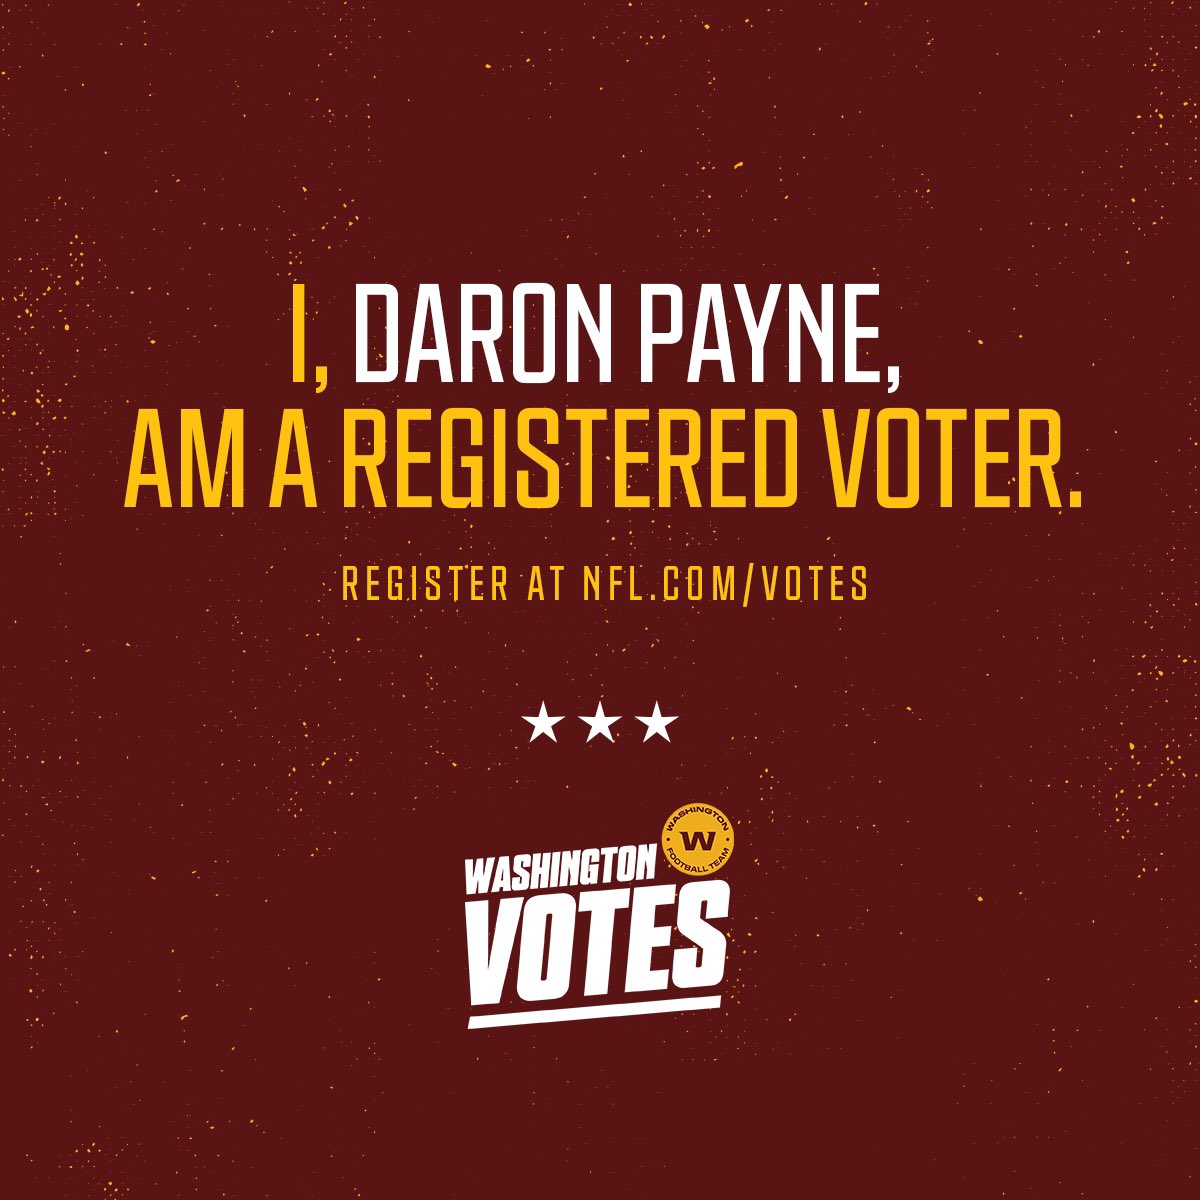 We need y’all in November
Register to vote #NFLVotes

NFL.com/votes